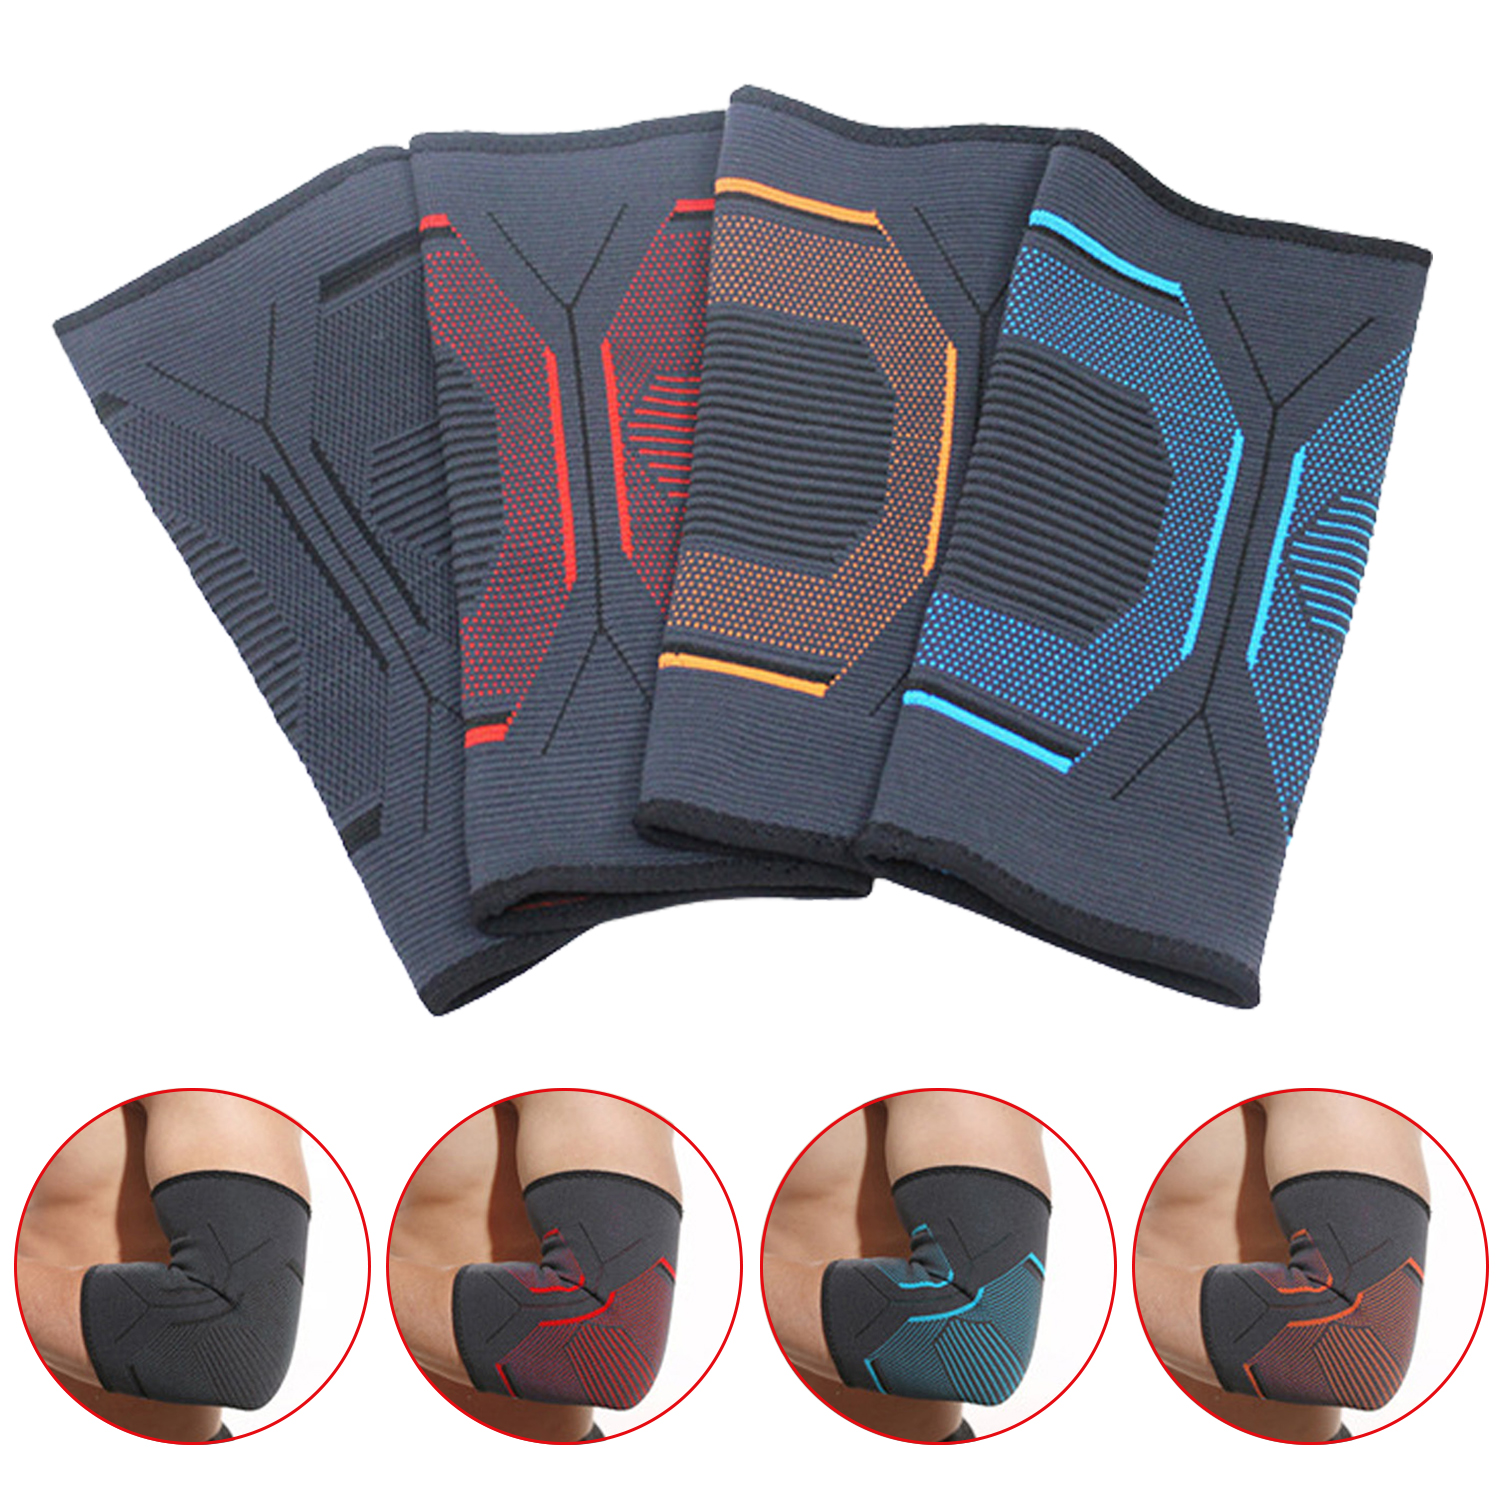 Almohadillas de codo de punto deportivo, almohadillas protectoras de codo de compresión, almohadillas de soporte para tenis